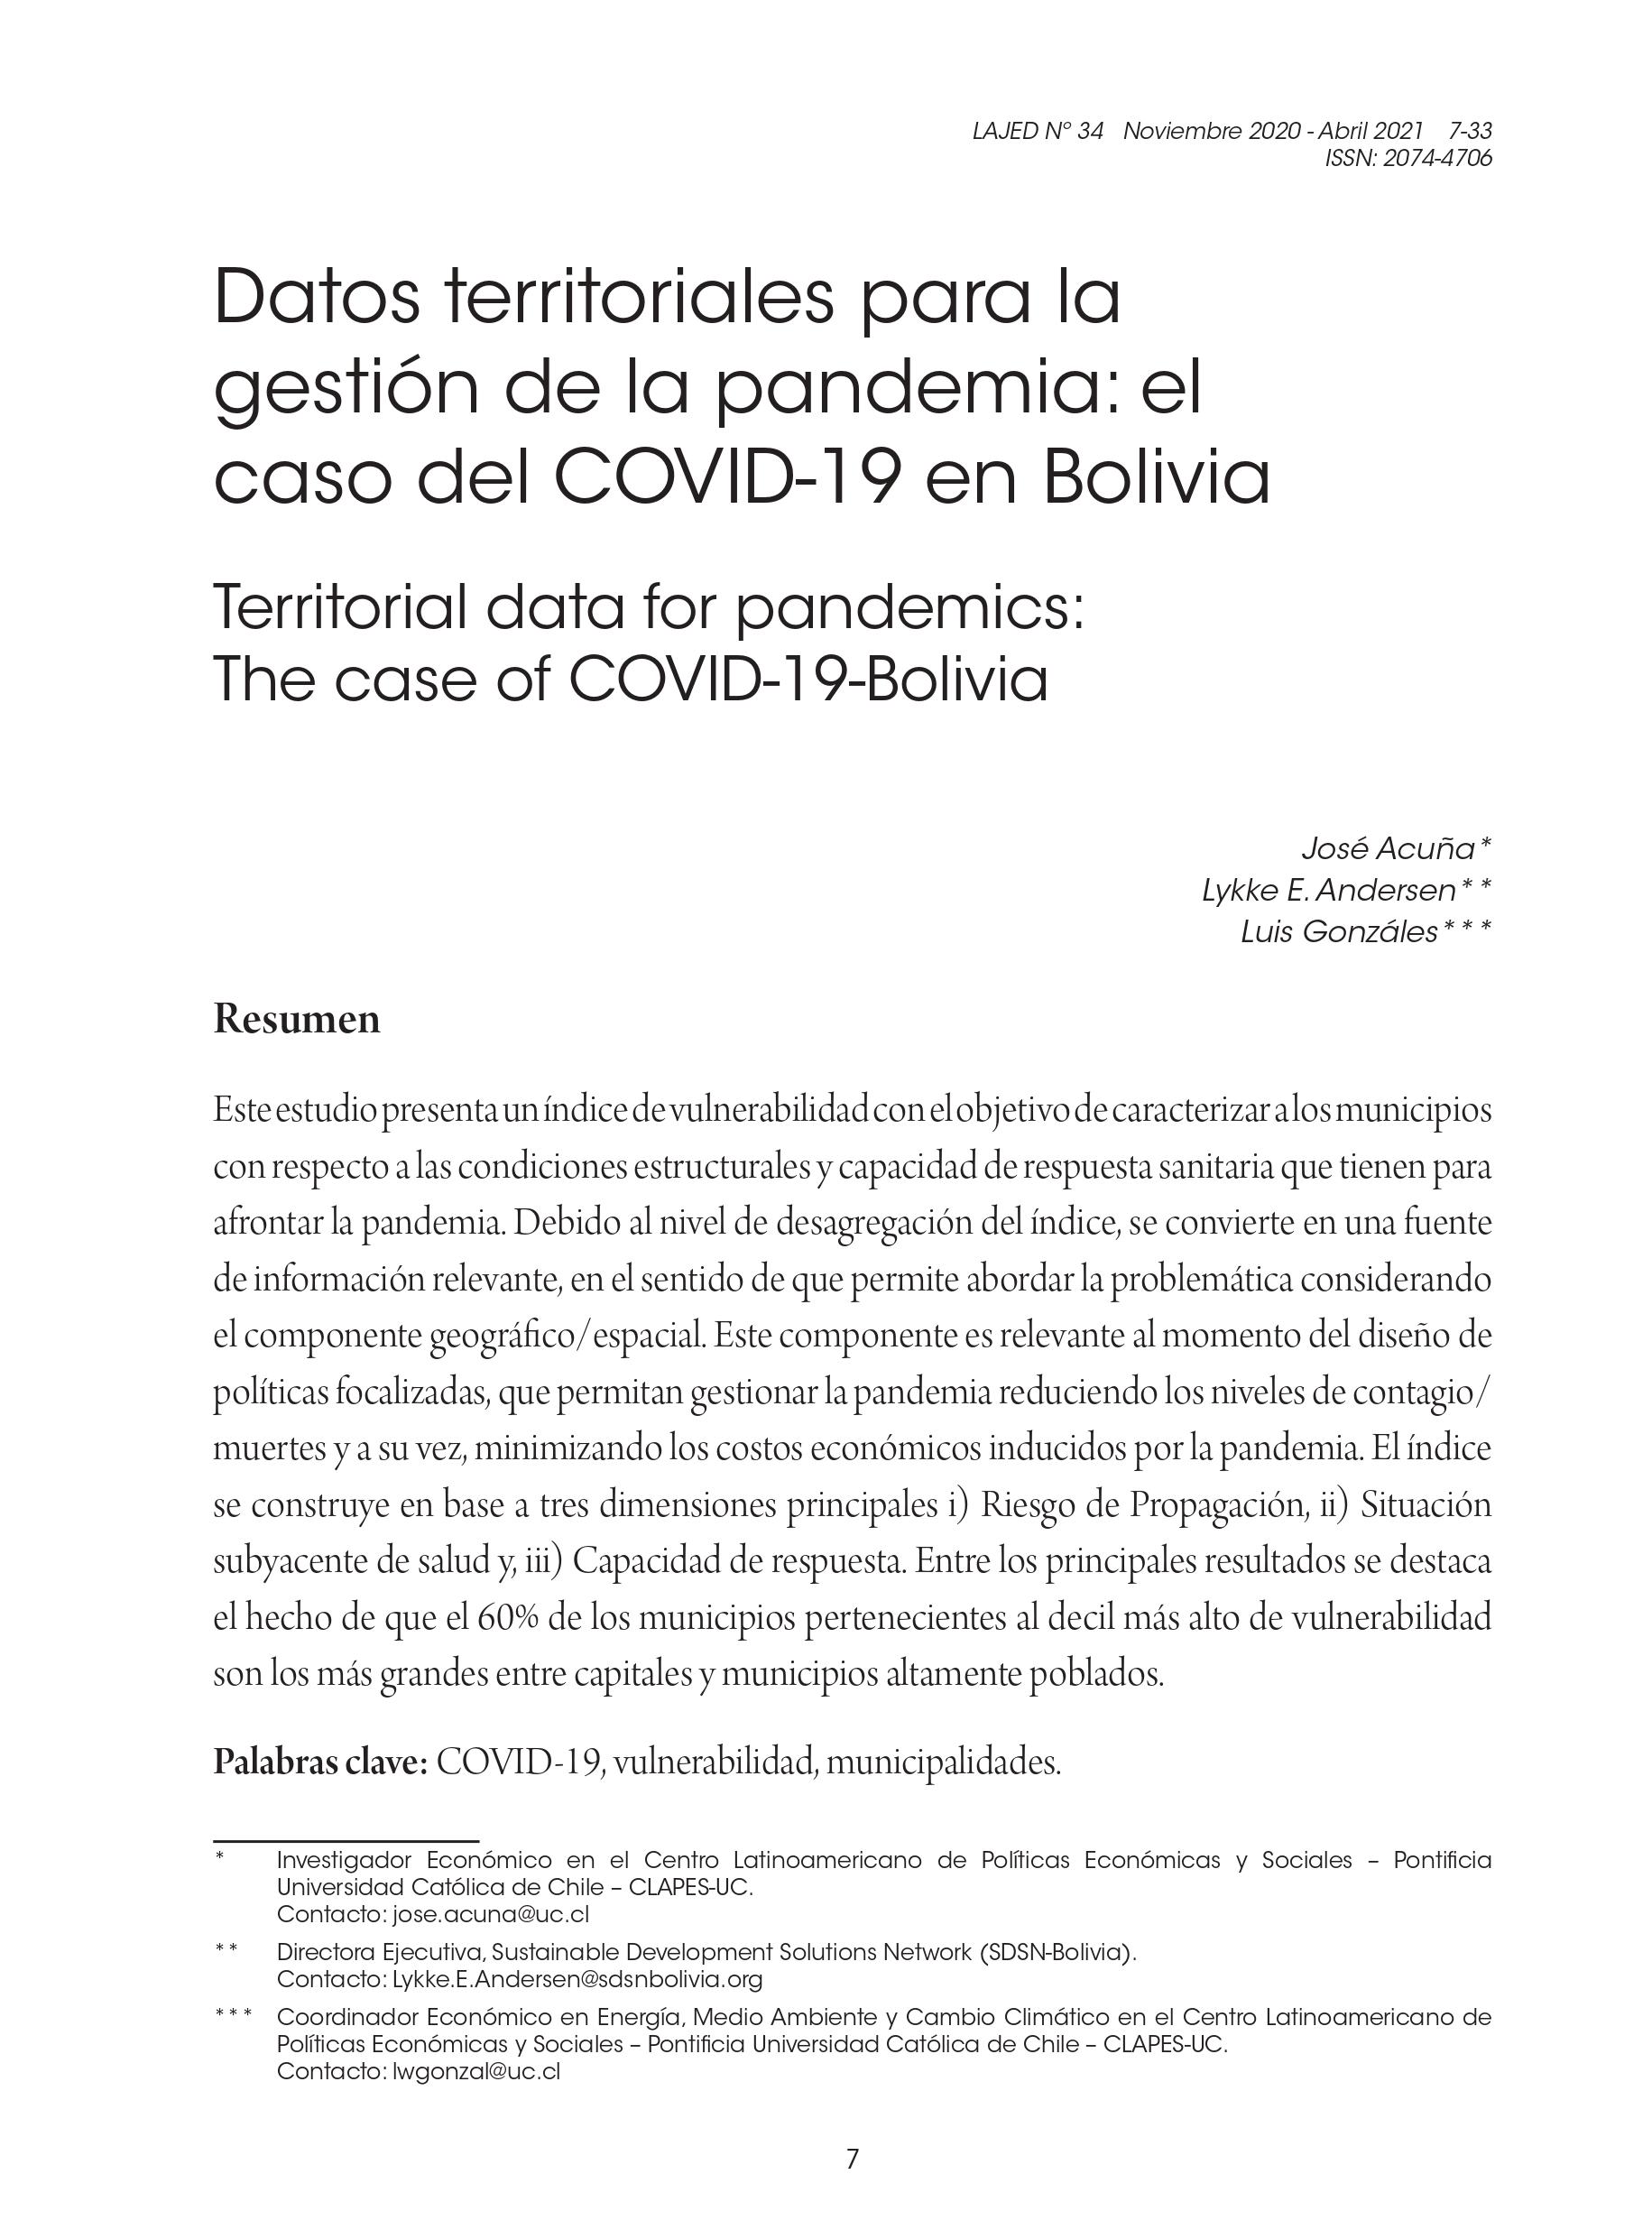 Datos territoriales para la gestión de la pandemia: el caso del COVID-19 en Bolivia